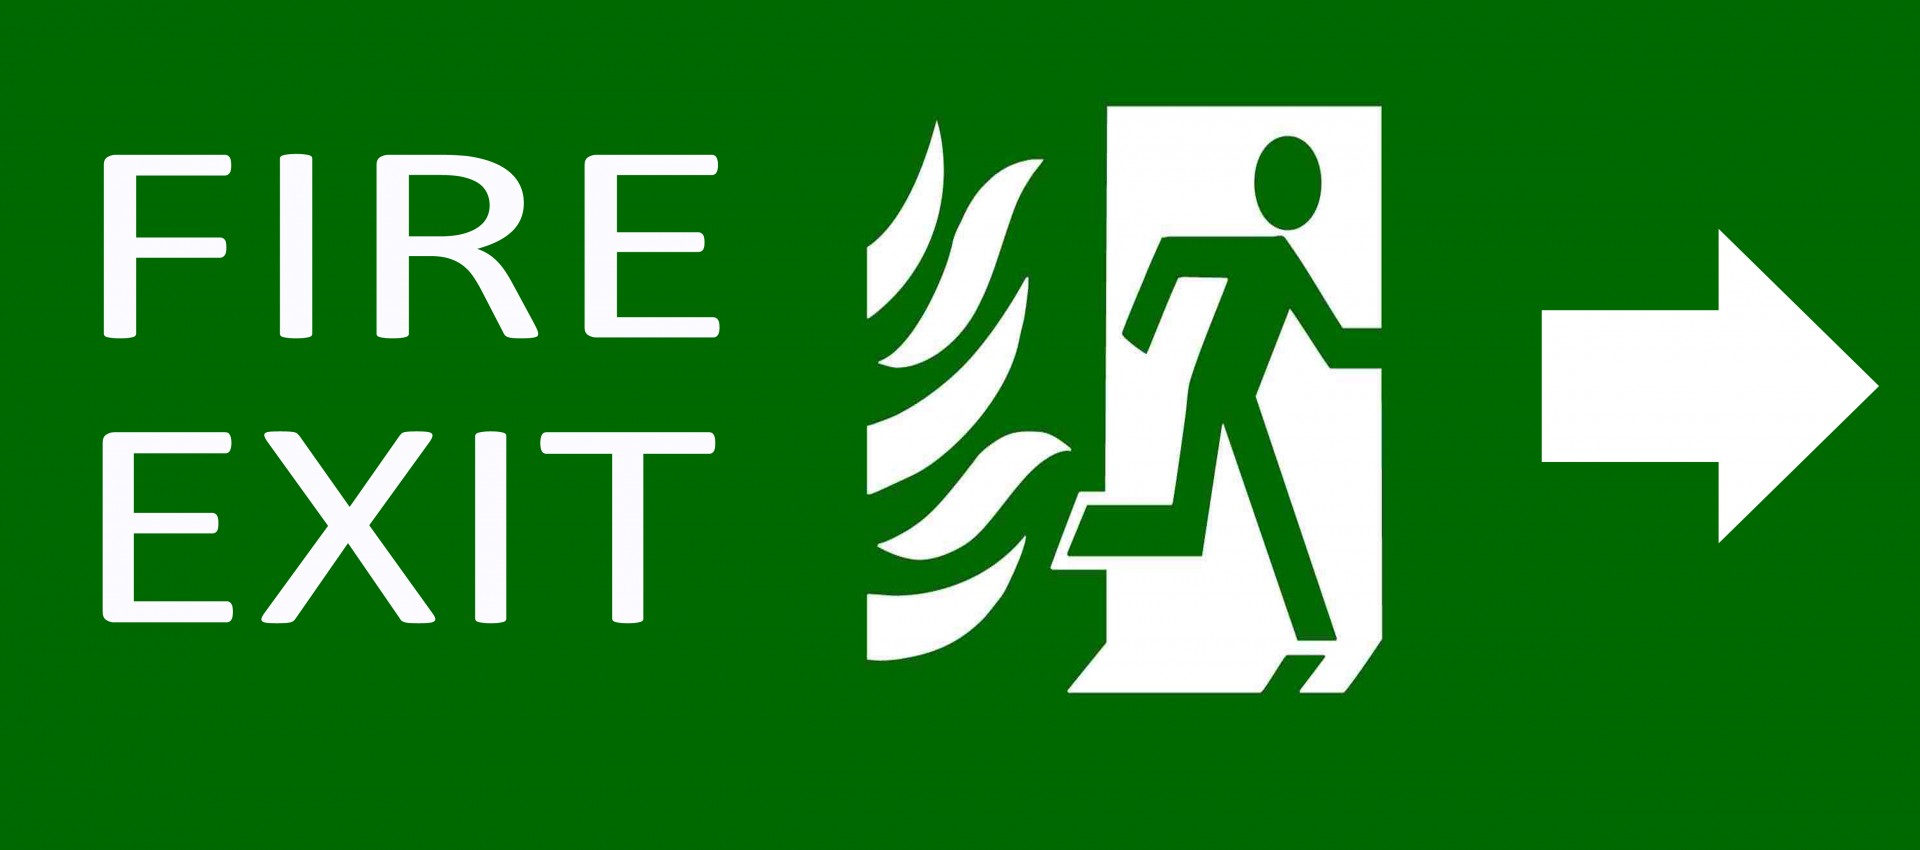 Зеленый знак аварийный выход на белом